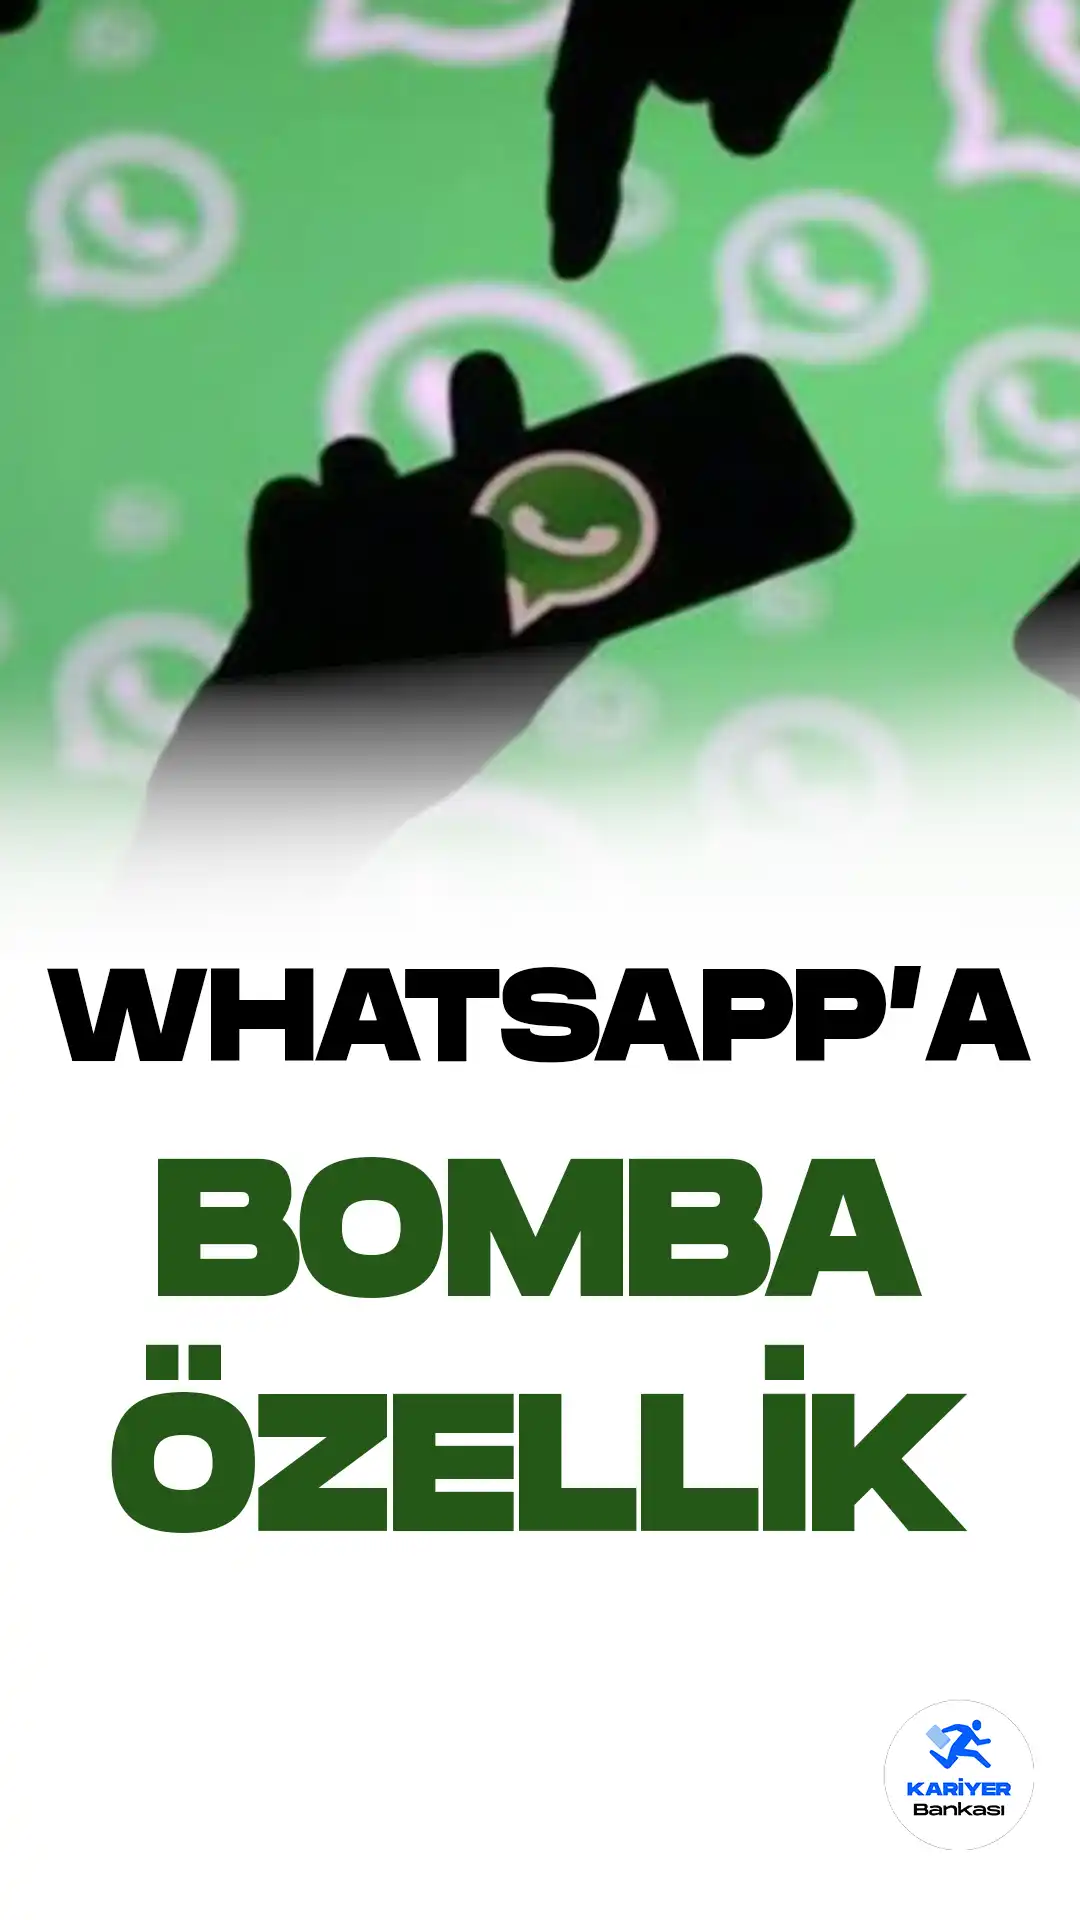 Popüler mesajlaşma platformu WhatsApp, kullanıcılarına gönderilen mesajları düzenleme olanağı sağlamaya başladığını duyurdu.